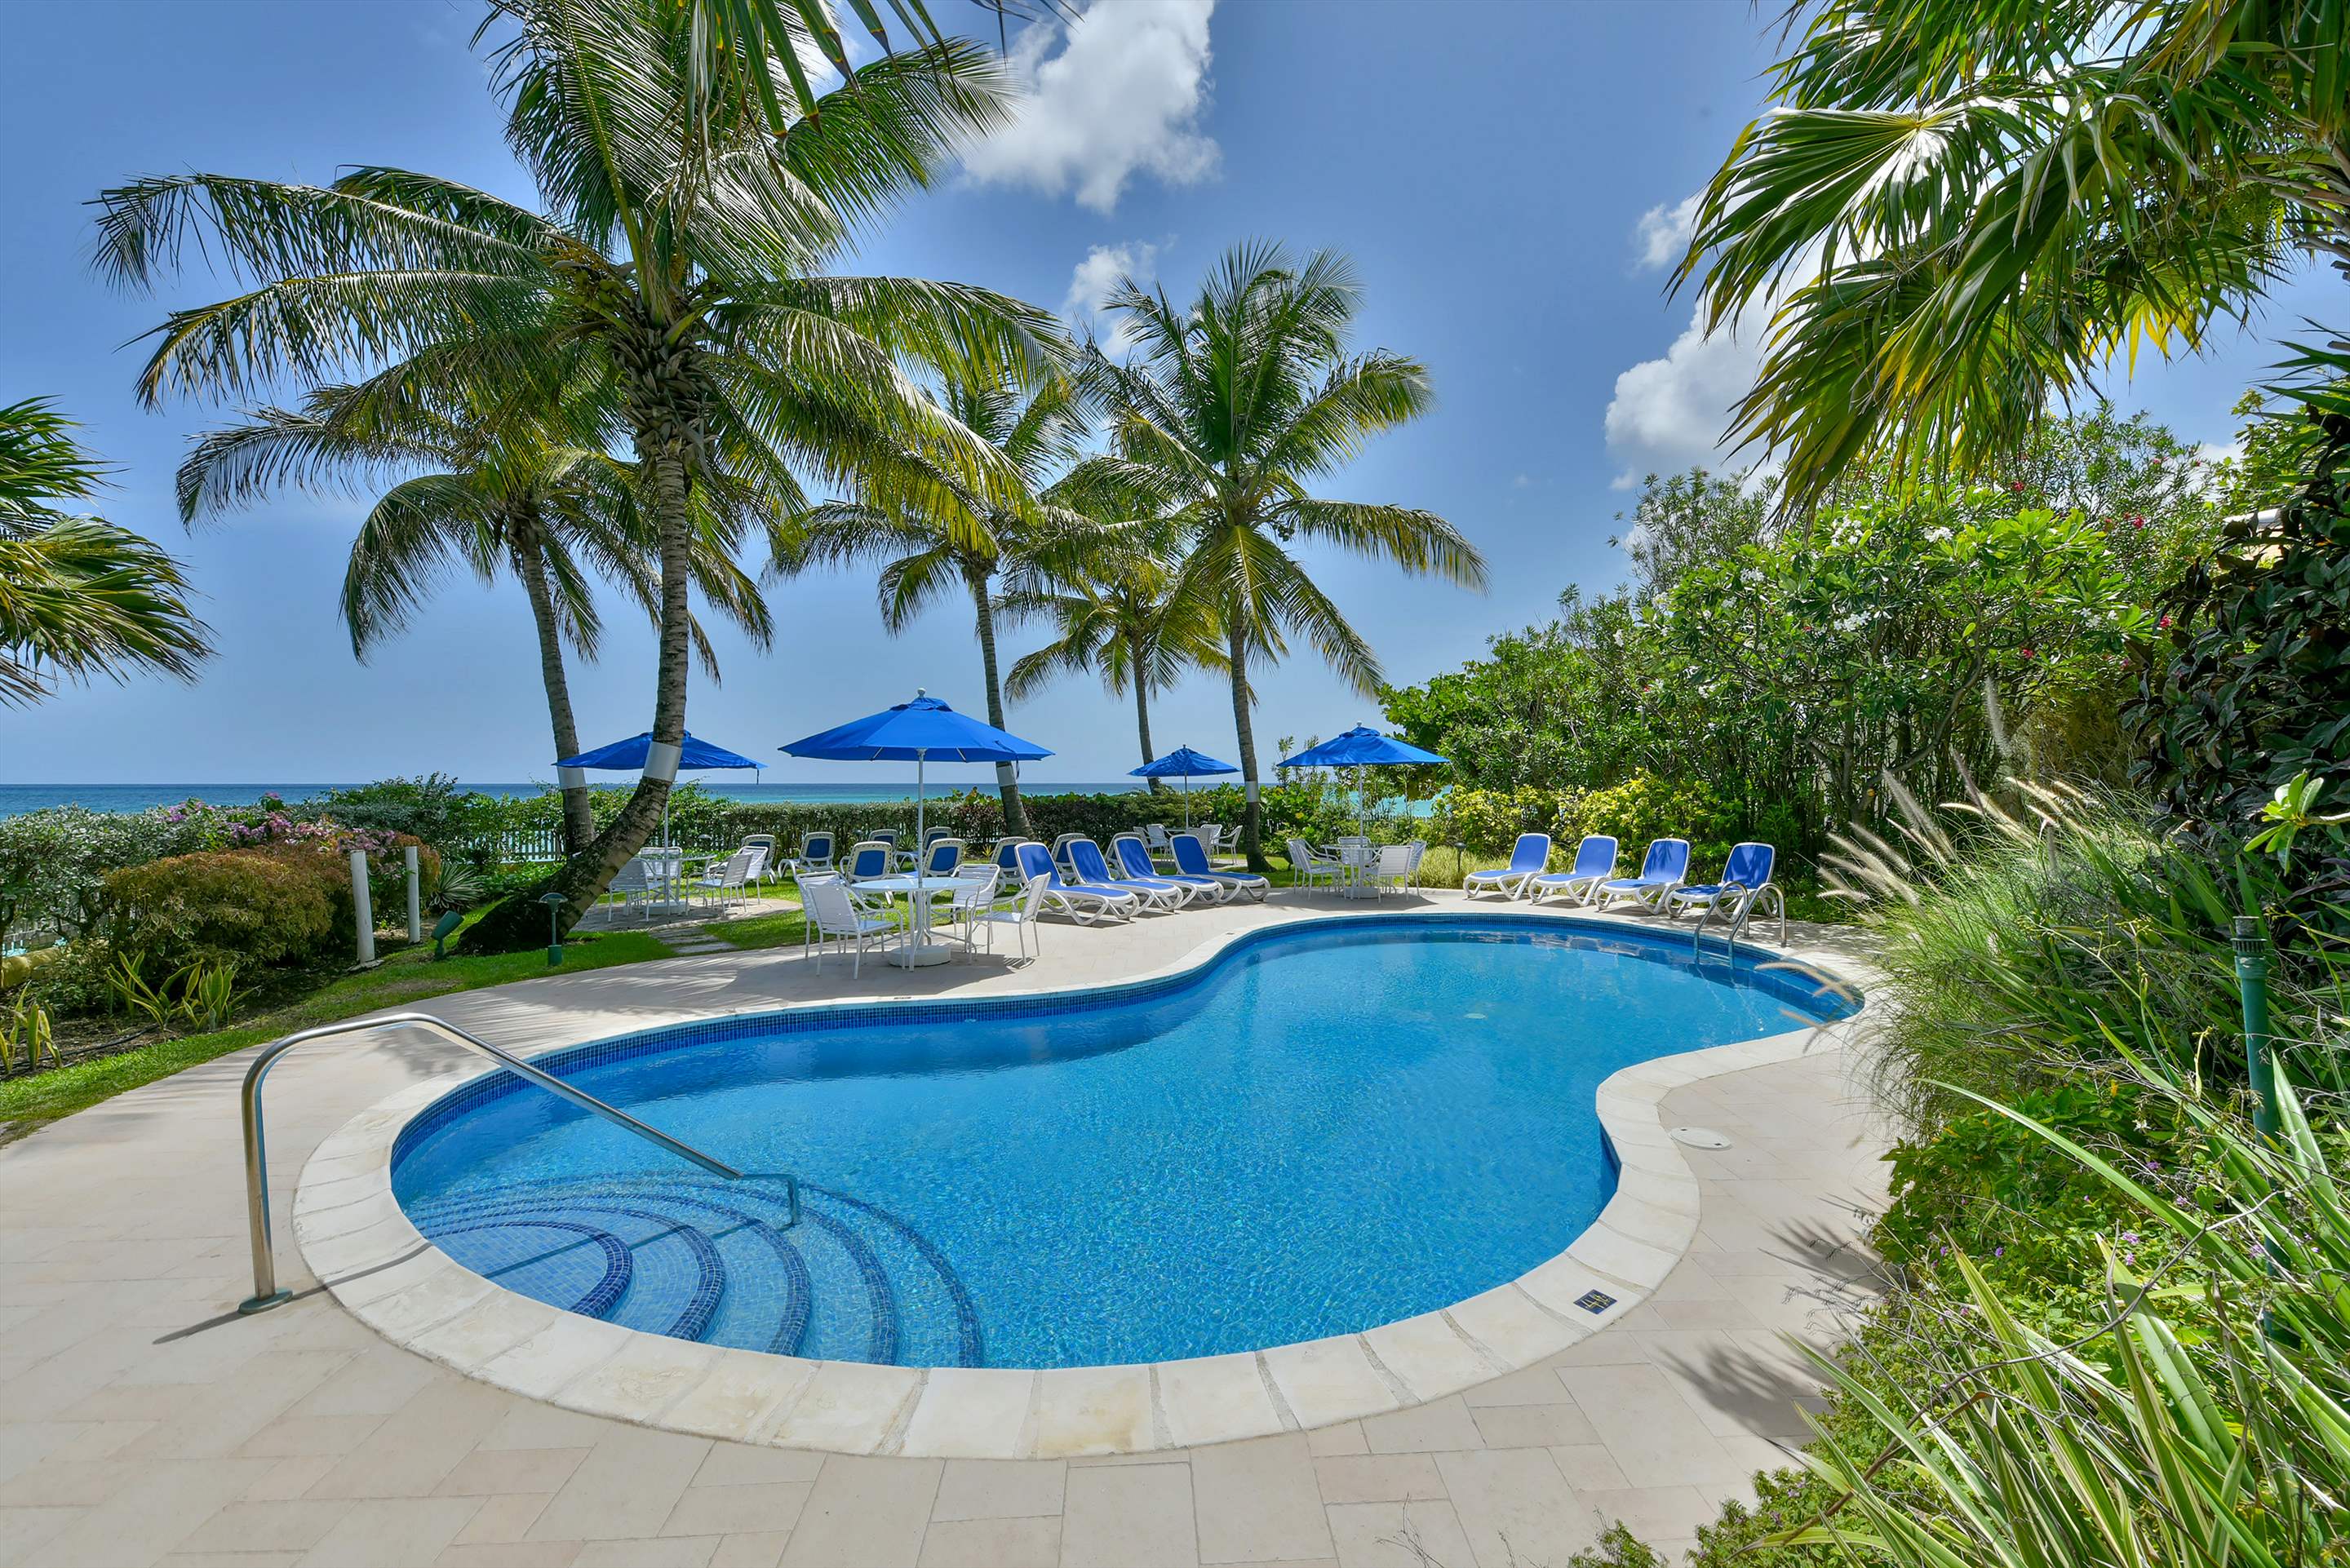 Maxwell Beach Villas 402, 2 bedroom, 2 bedroom villa in St. Lawrence Gap & South Coast, Barbados Photo #7